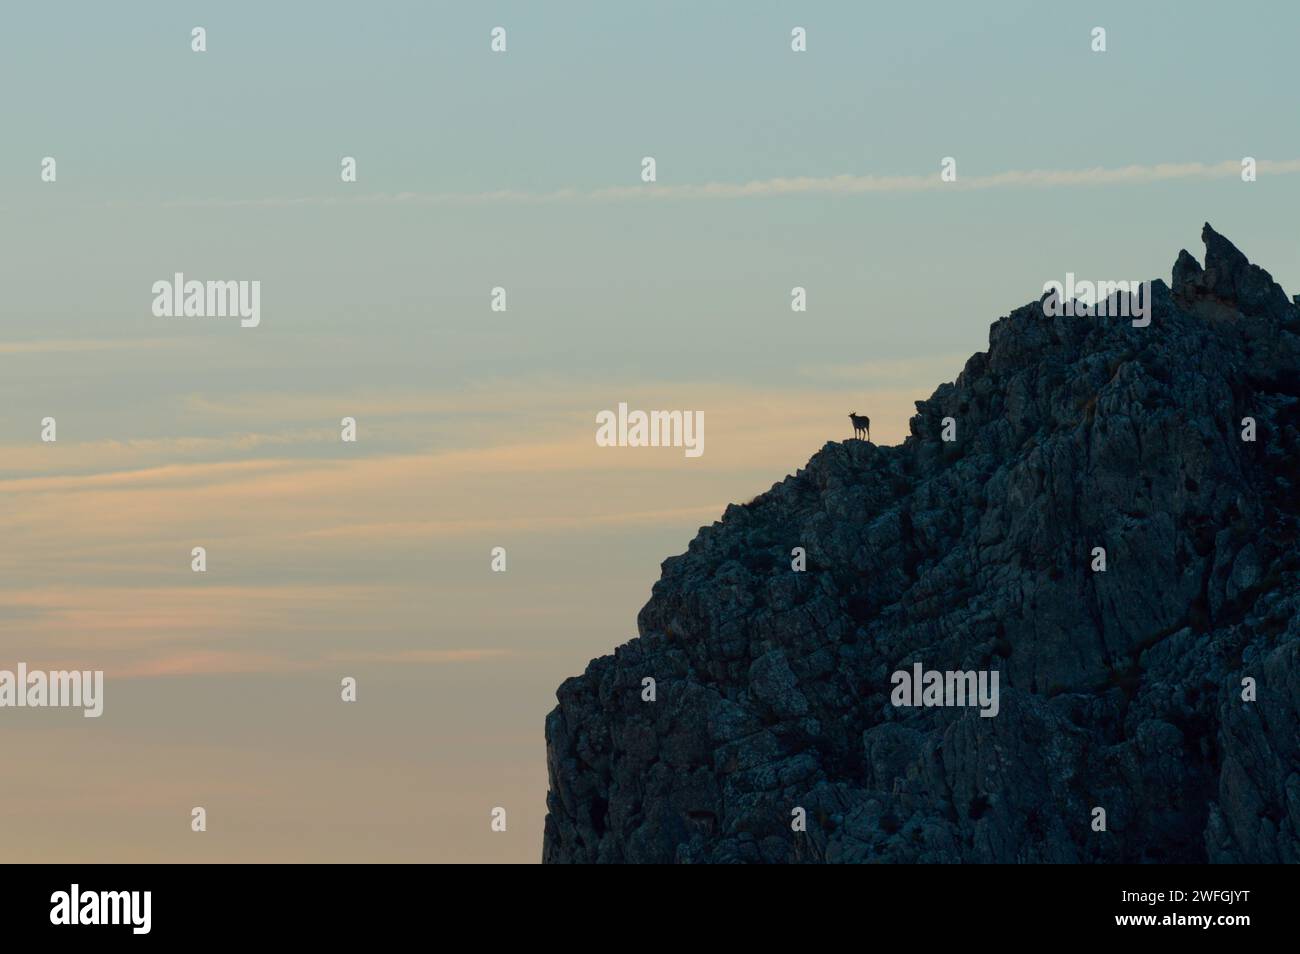 Une chèvre de montagne perchée sur un sommet rocheux au coucher du soleil, mettant en valeur son habitat naturel et les caractéristiques géologiques d’un écosystème de montagne. Banque D'Images